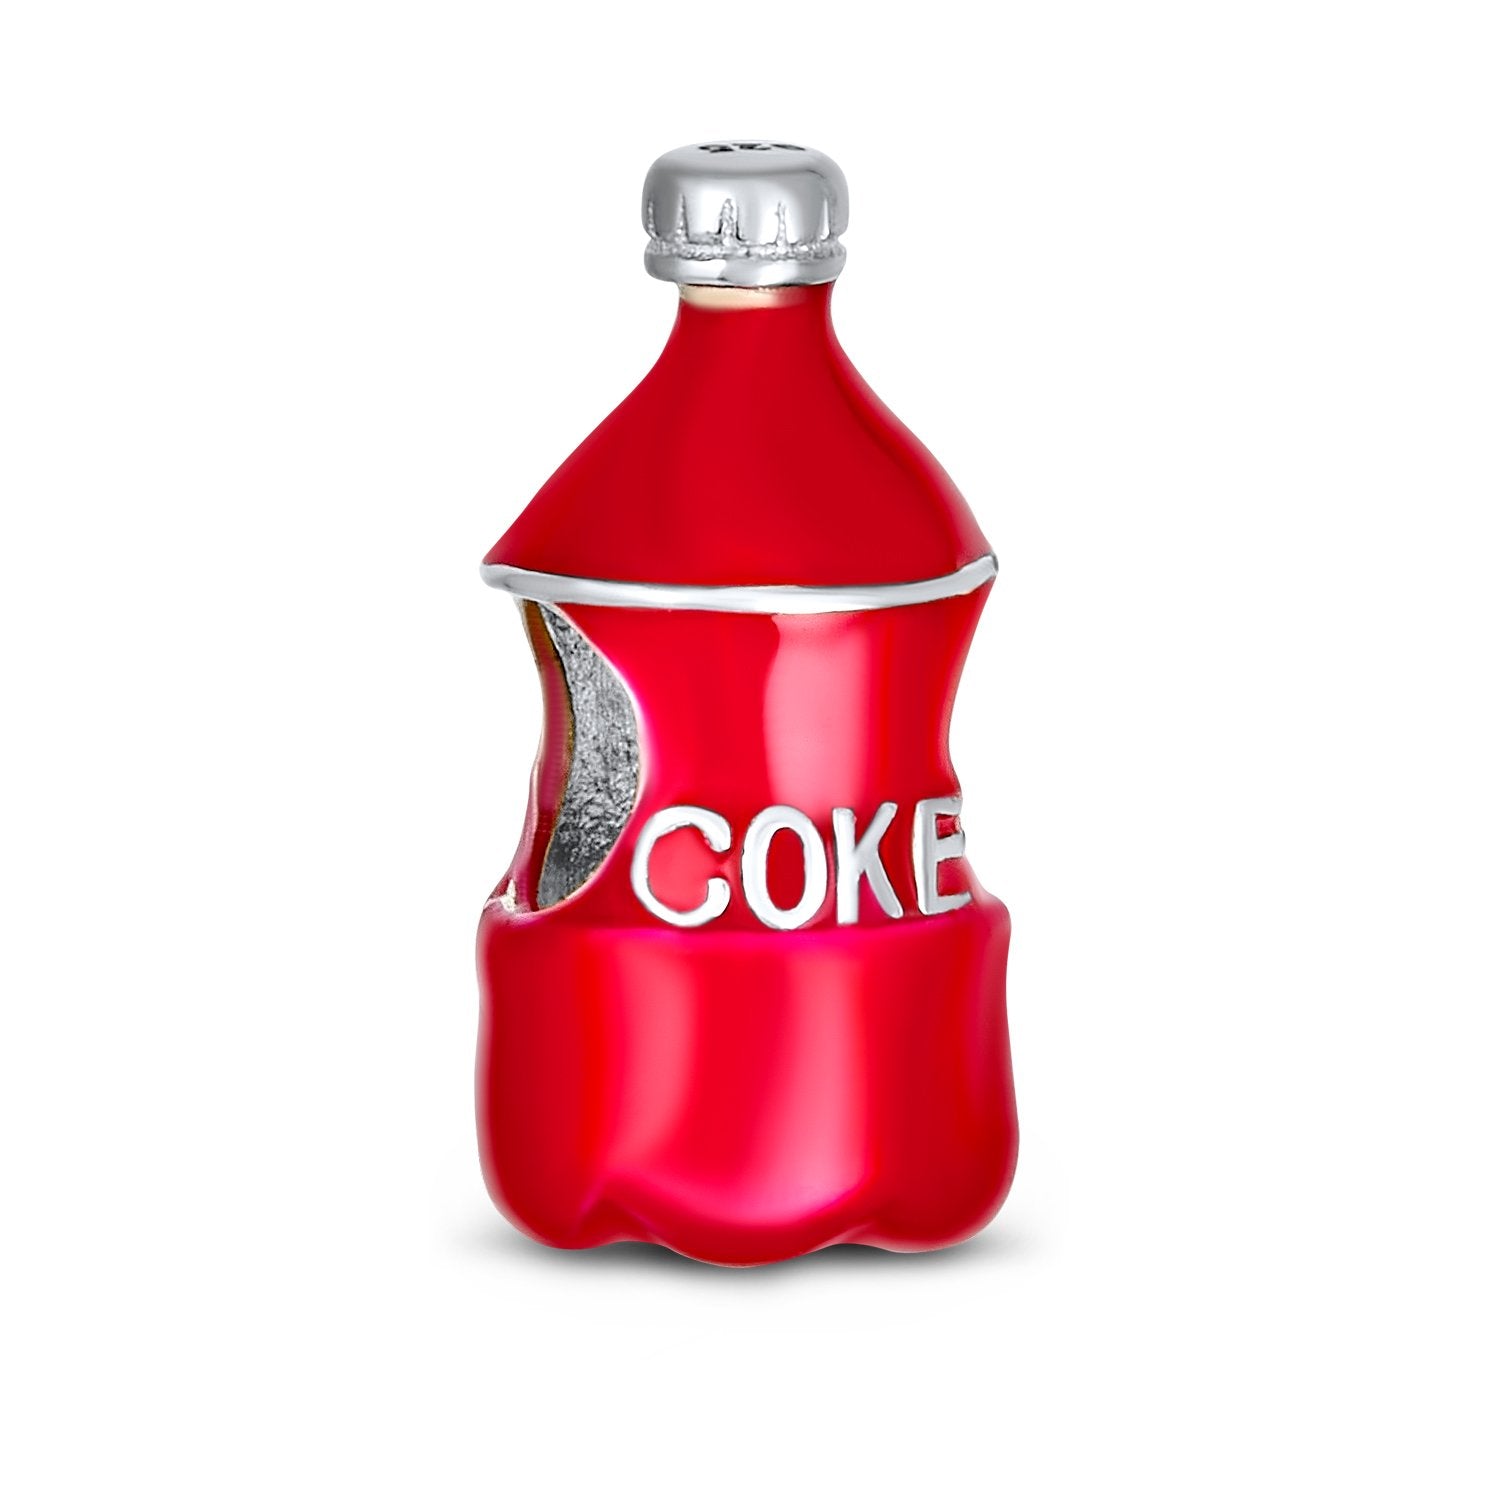 Coke Bottle Soda Lover Red Drink Charm Bead 925 Sterling Silver - Joyeria Lady